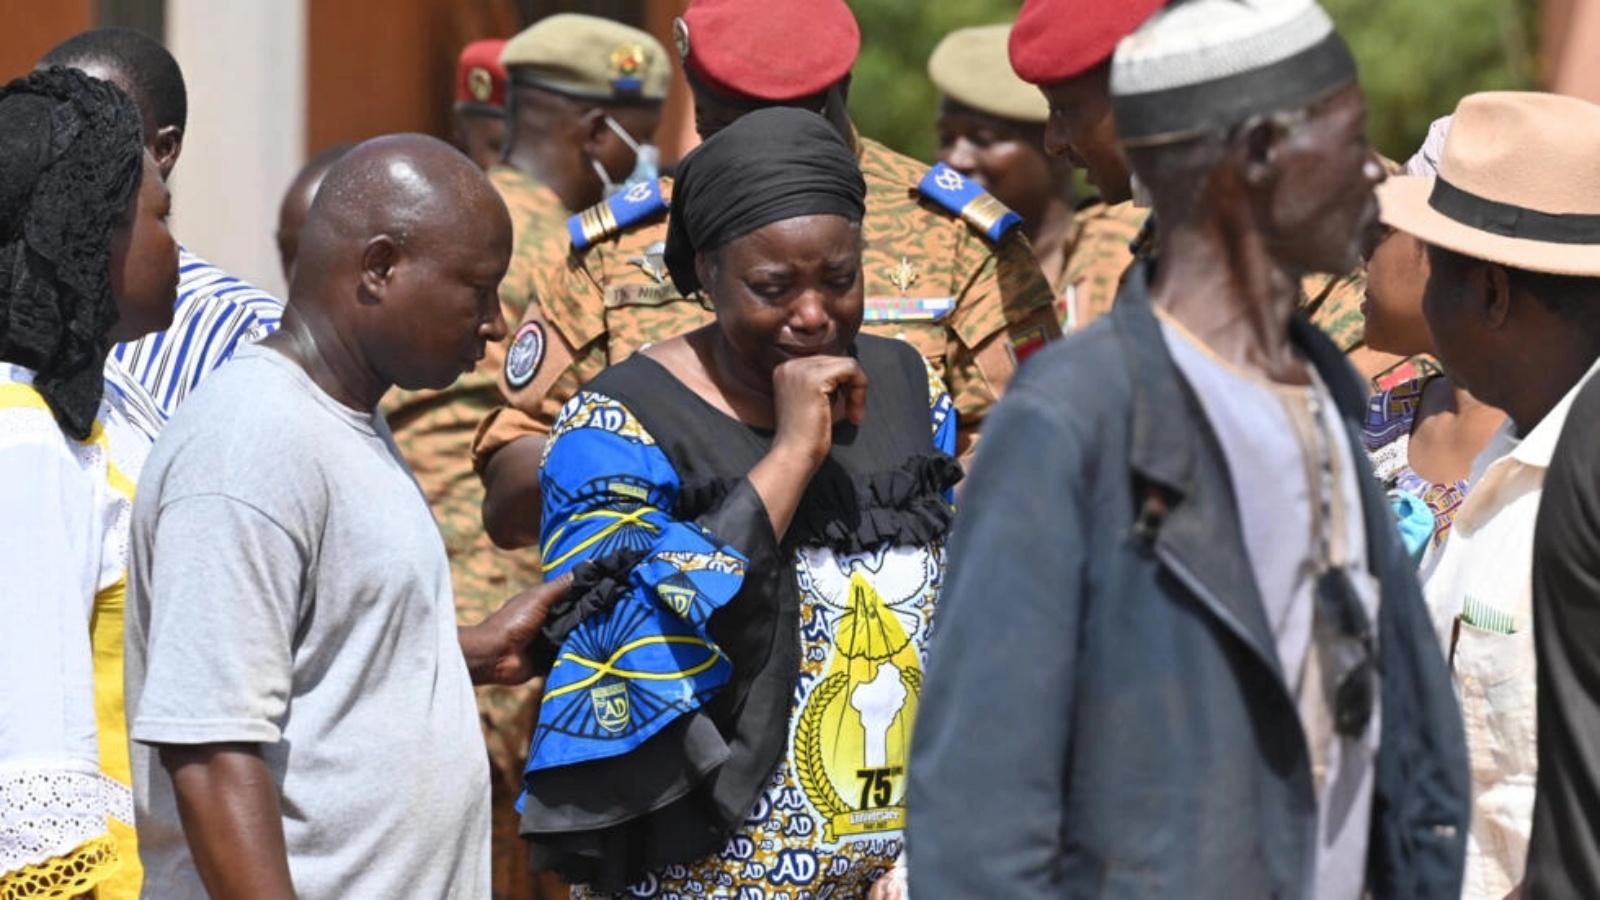 أفراد عائلة 27 جنديًا من بوركينا فاسو قتلوا في هجوم تبنته القاعدة. ابتليت بوركينا فاسو بالعنف الجهادي المستشري منذ عام 2015